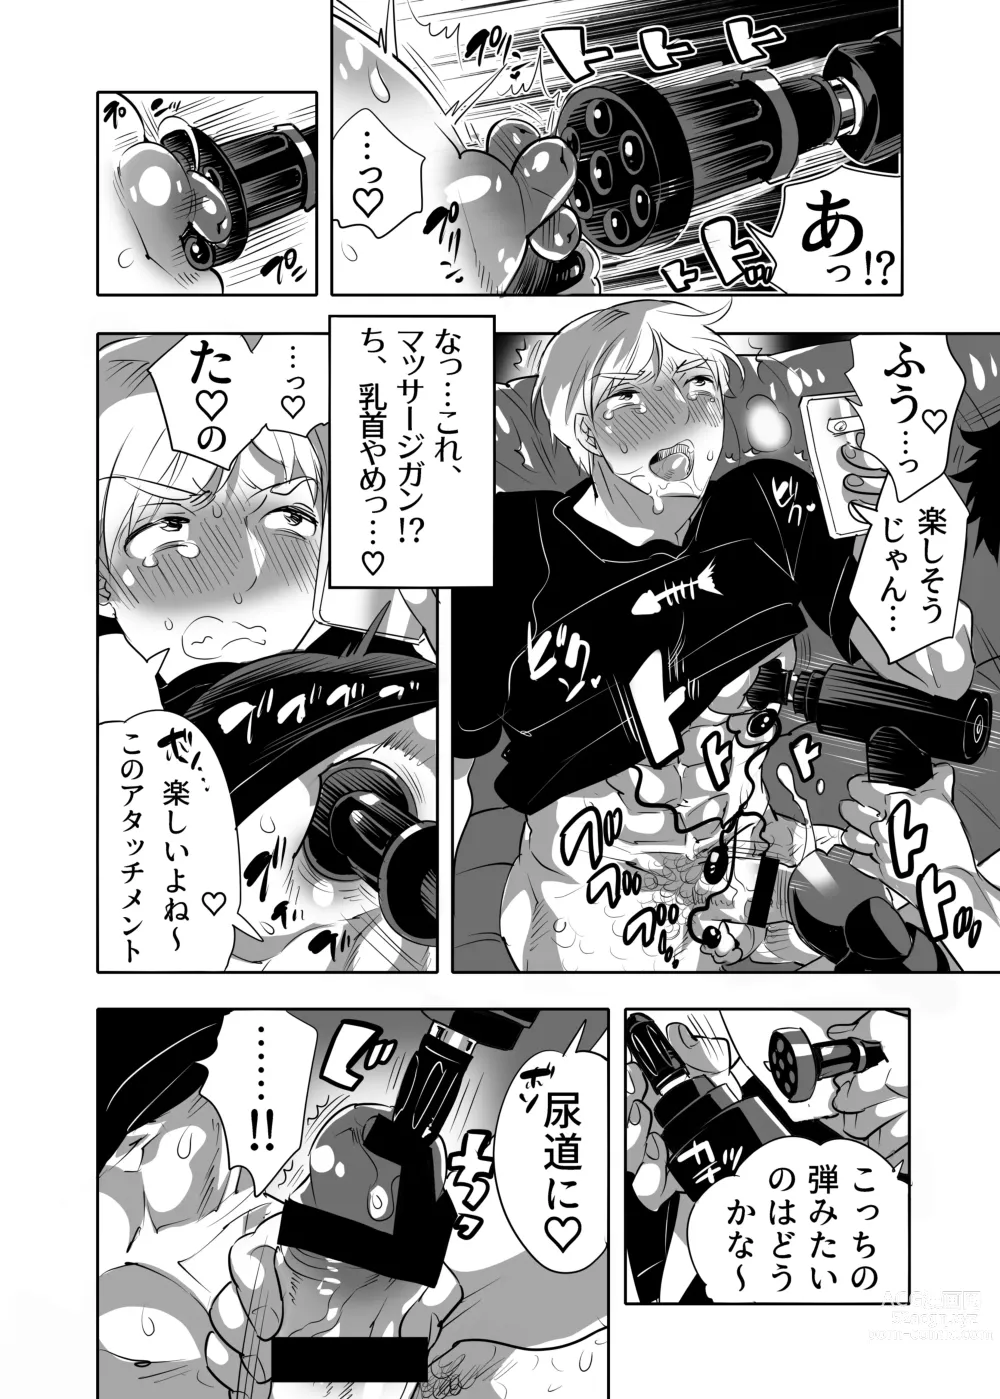 Page 52 of manga Abuso OK Prisionero Niño